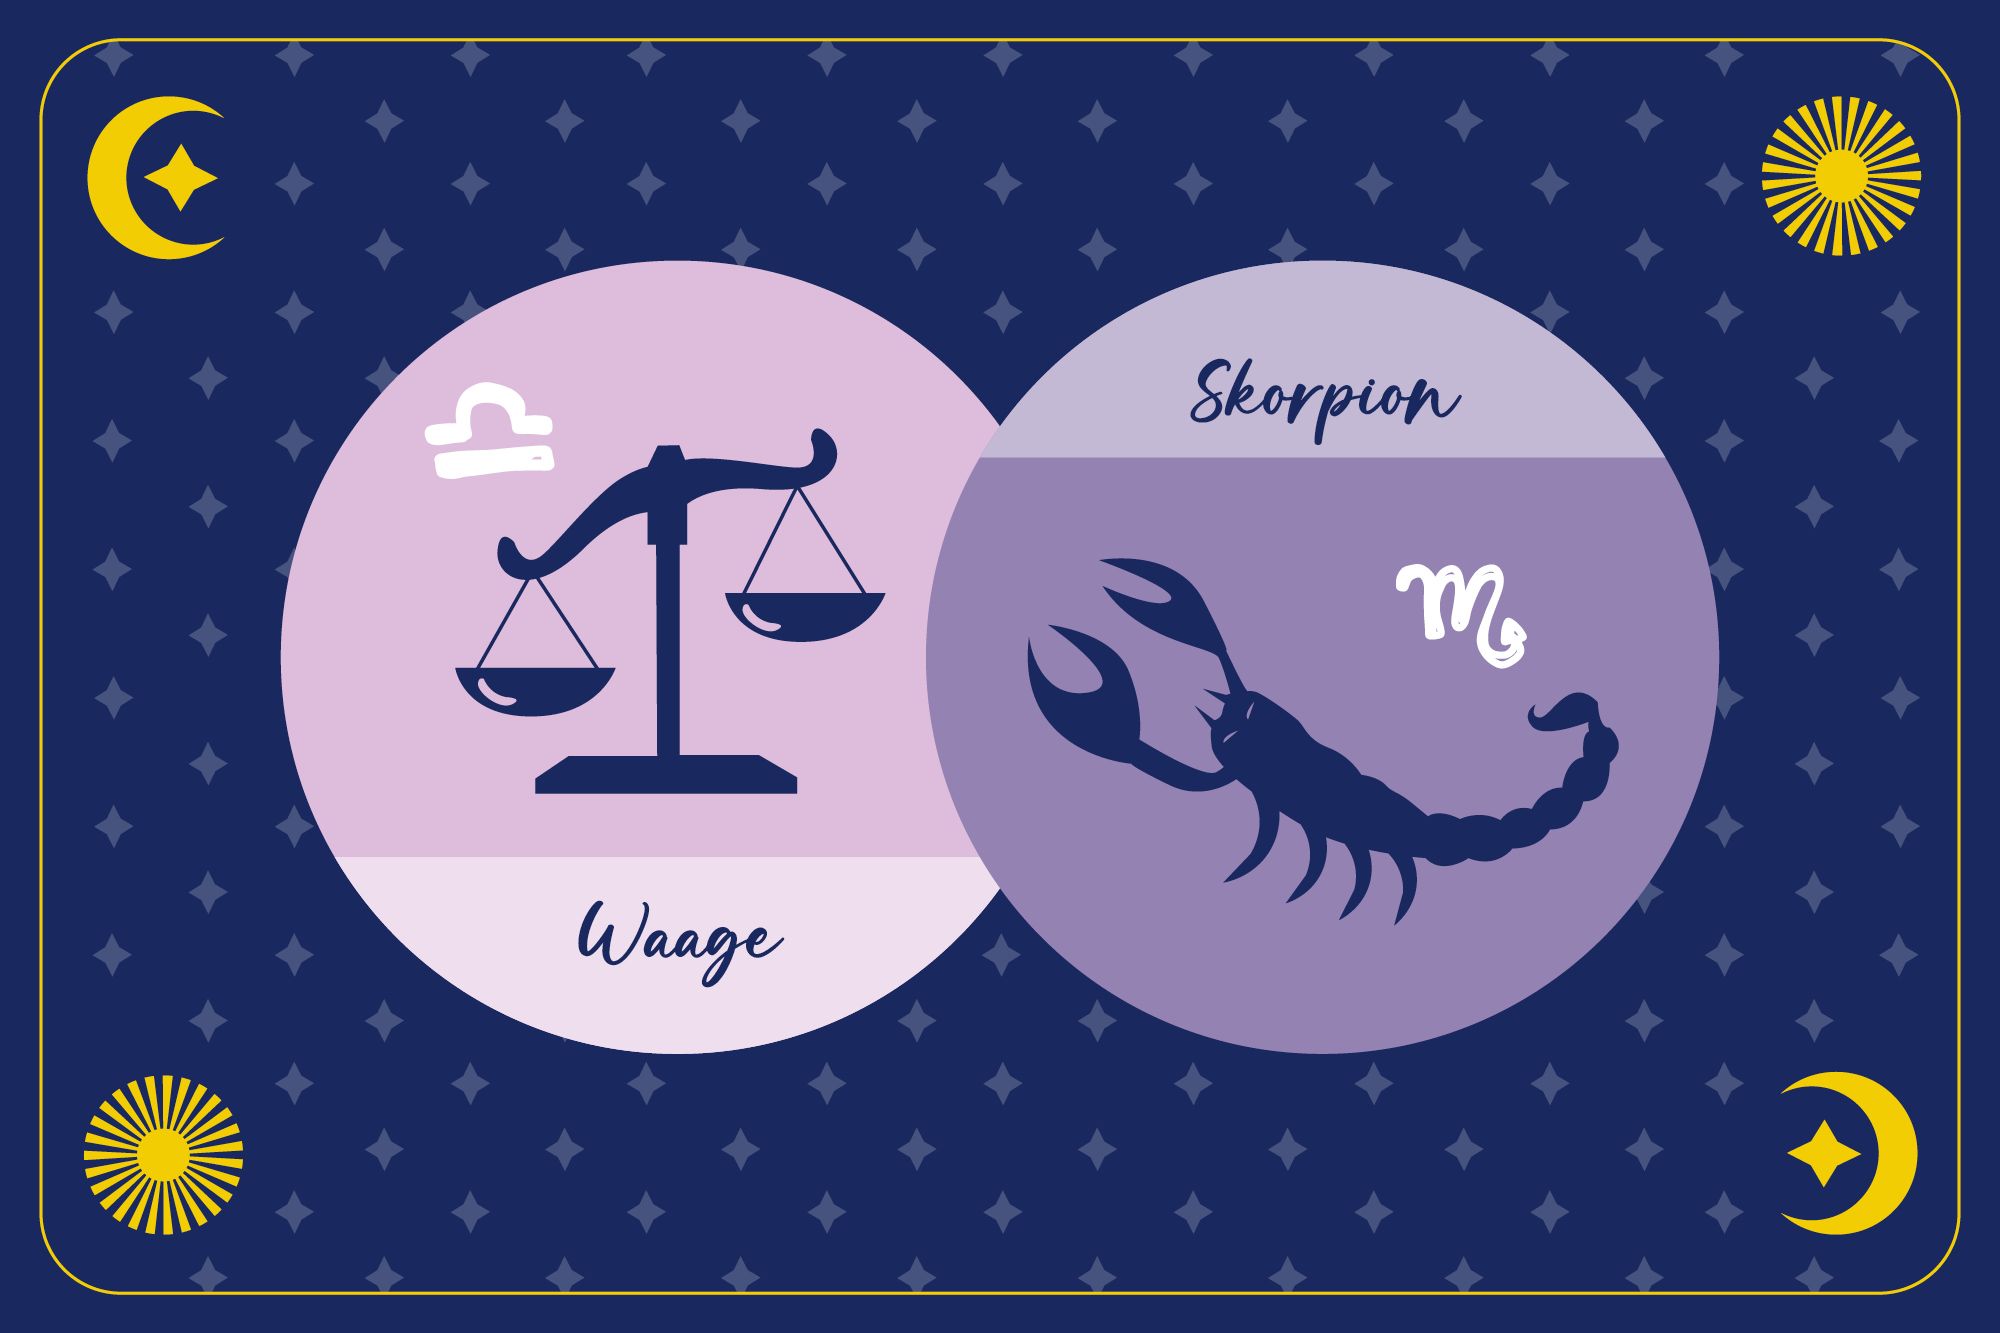 Sternzeichen Skorpion in lilanem Kreis und Sternzeichen Waage in hellrosanem Kreis auf dunkelblauem Hintergrund mit Mond, Sonne und Sternen